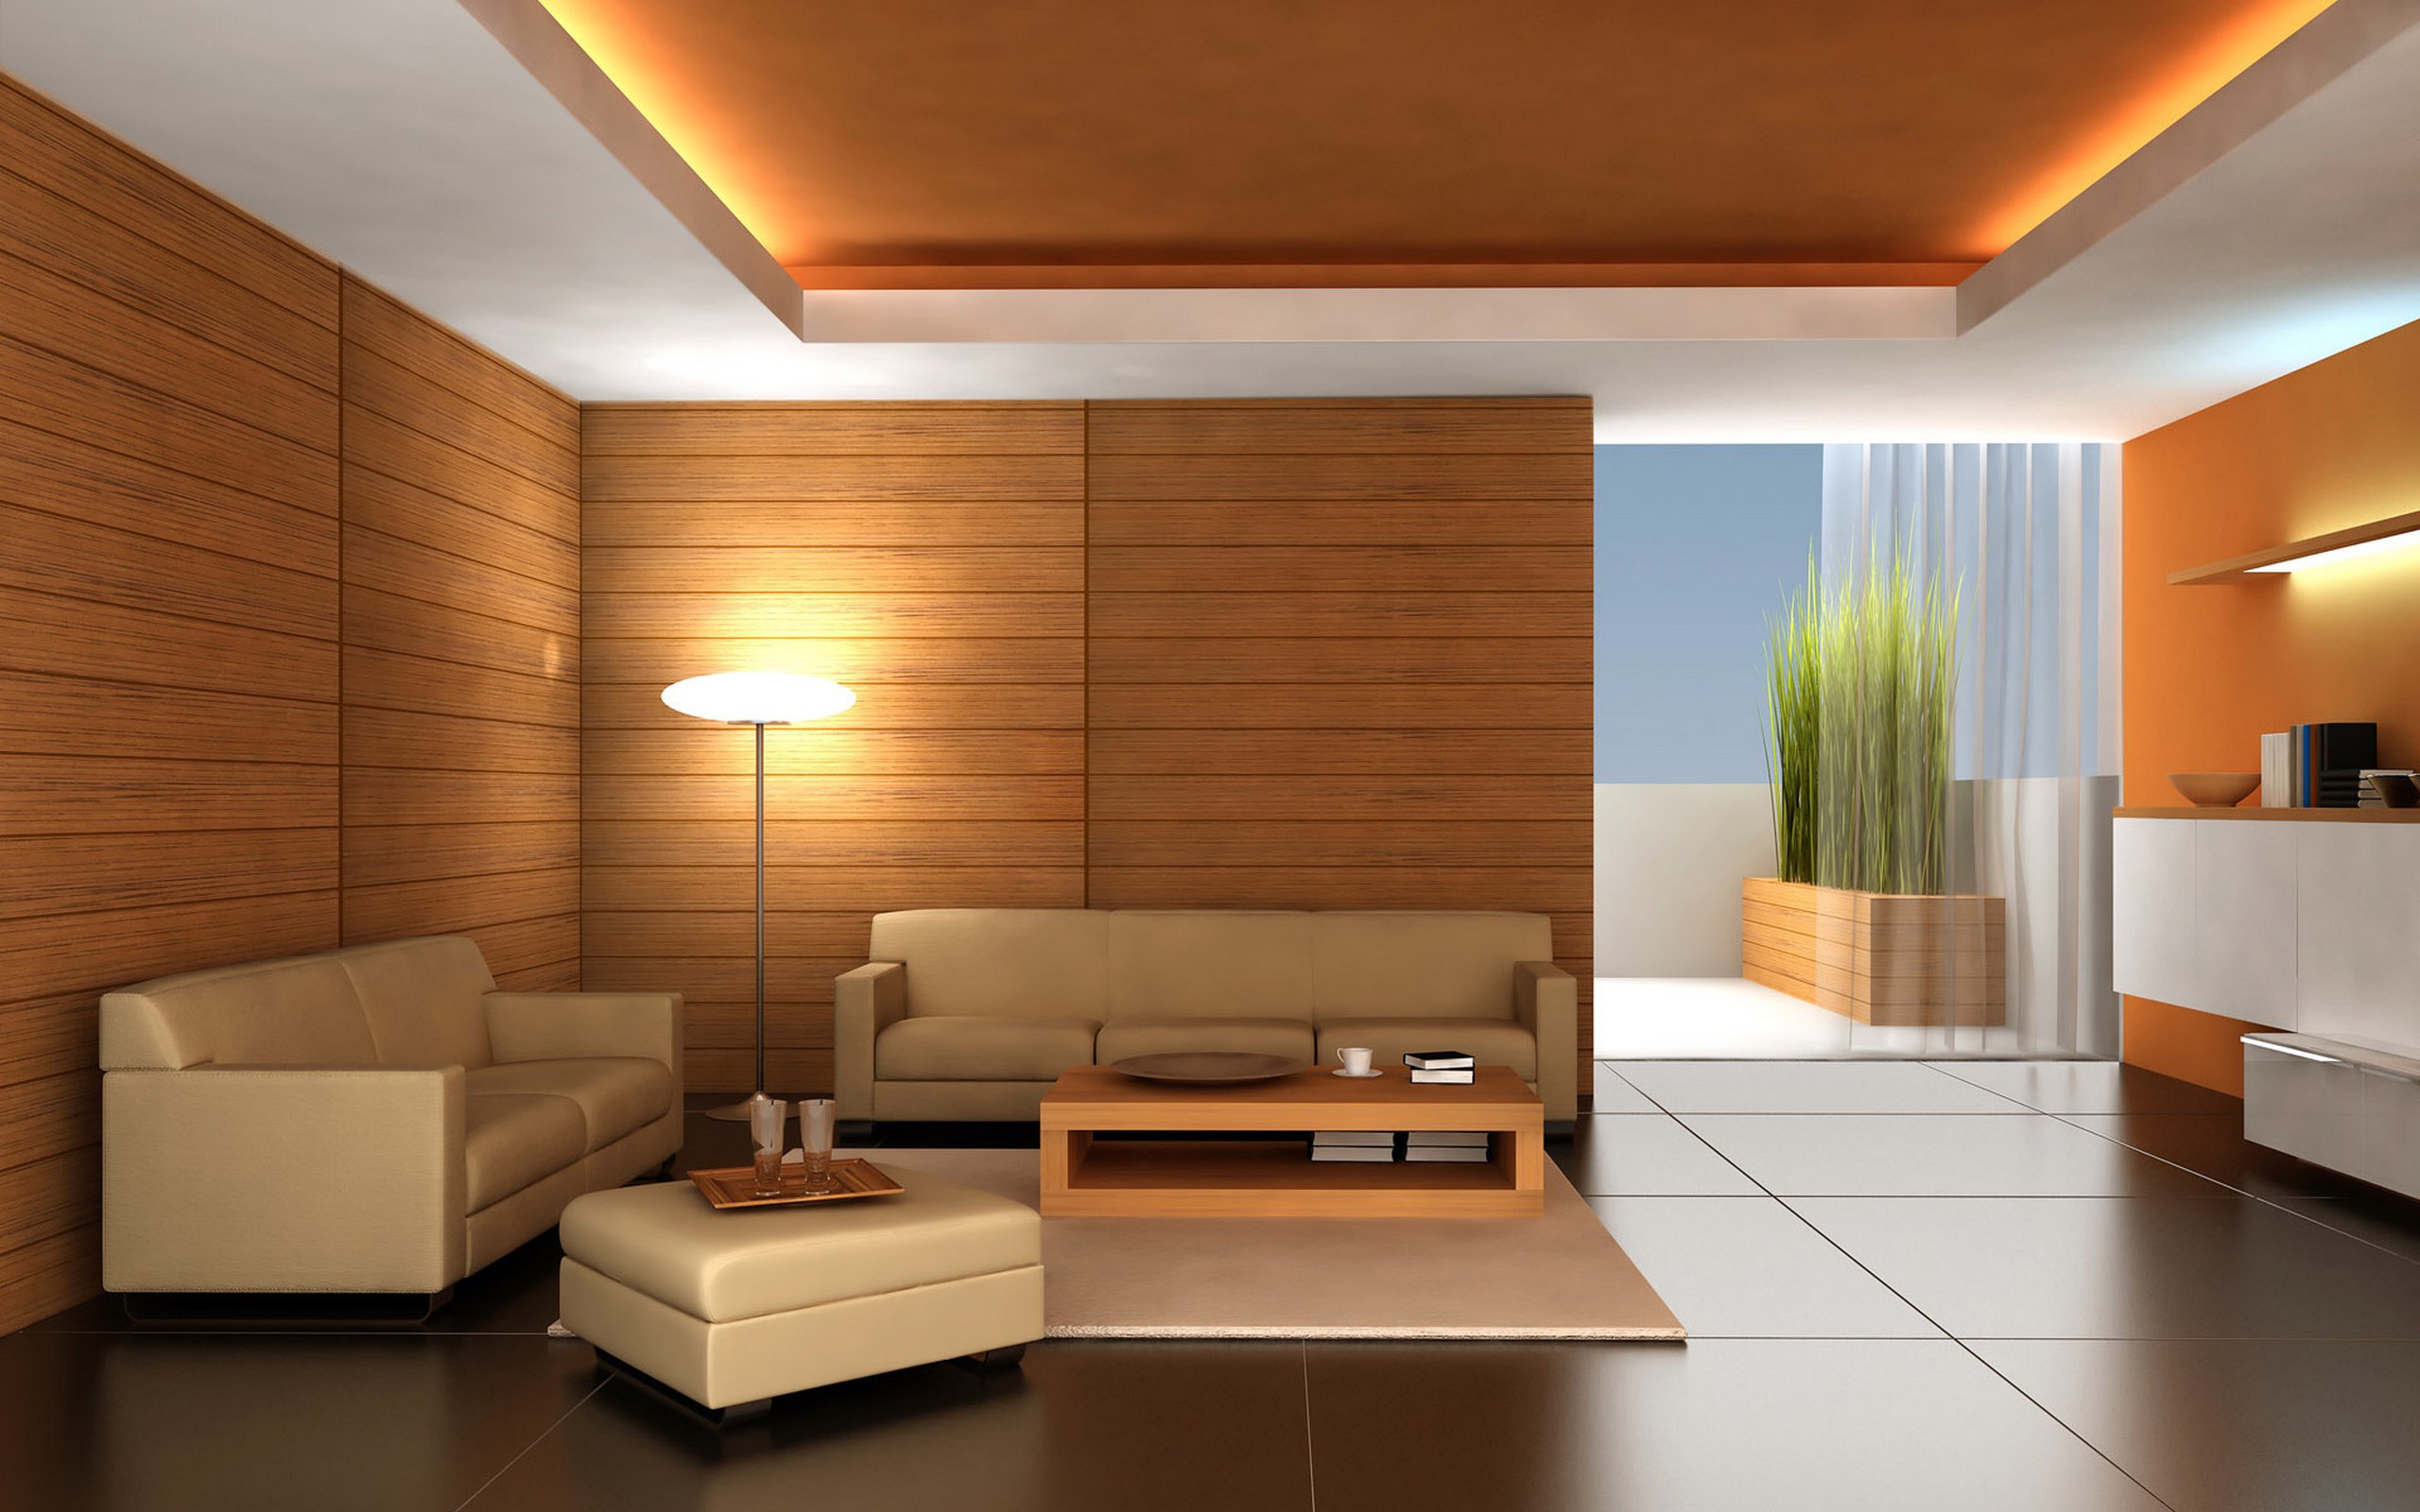 Trang trí phòng khách bằng gỗ